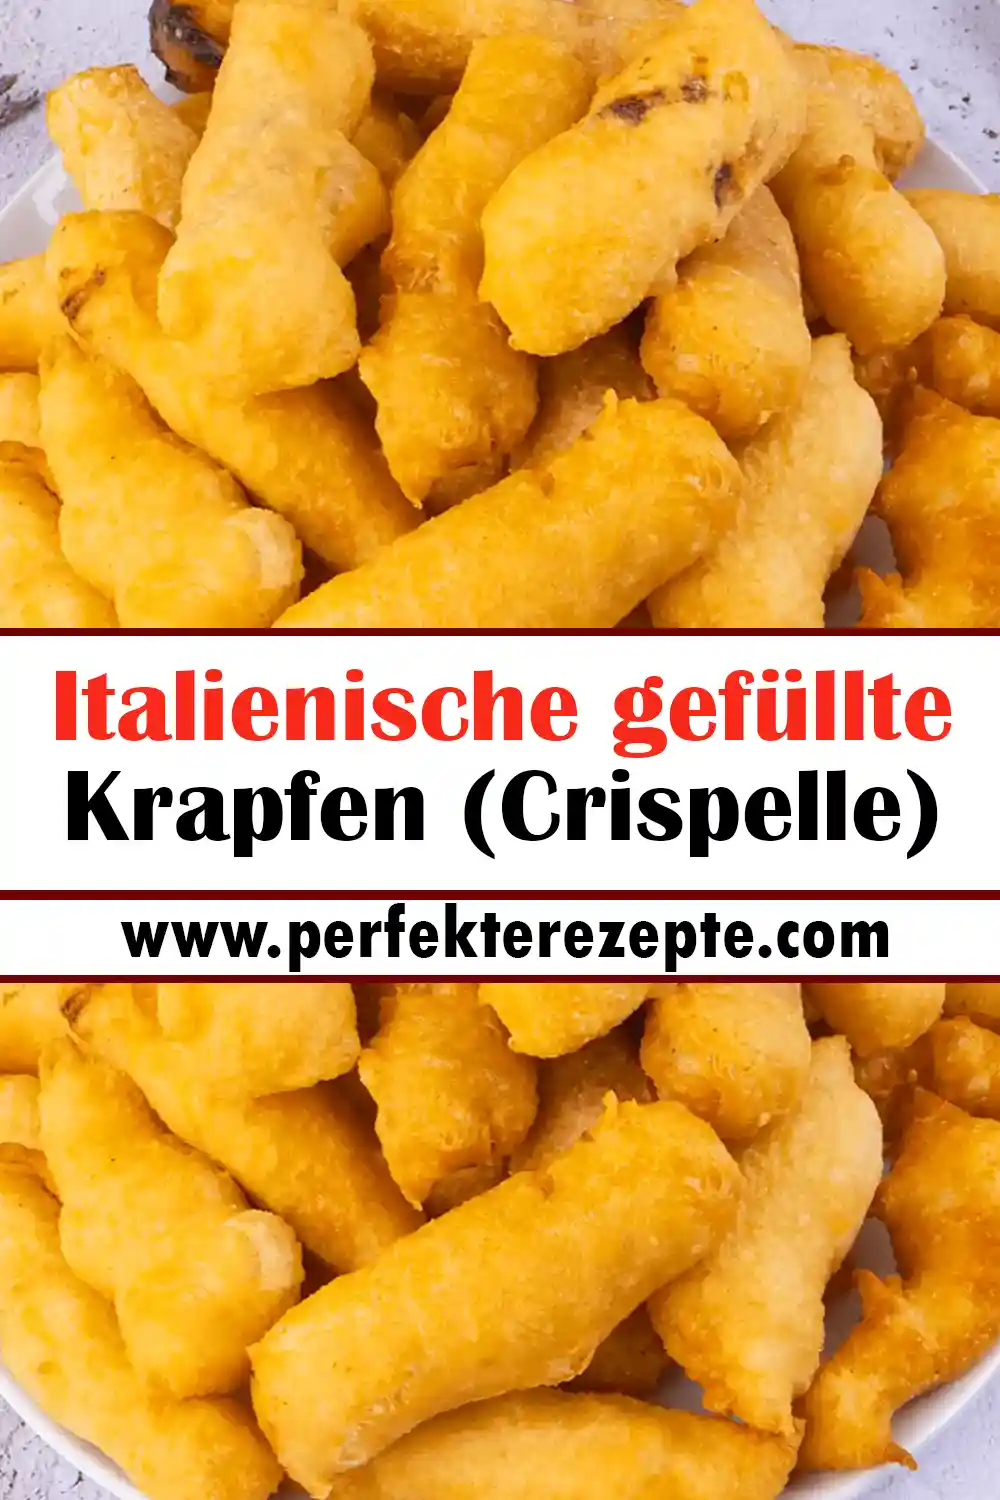 Italienische gefüllte Krapfen (Crispelle) Rezept: knusprig und schnell zubereitet!